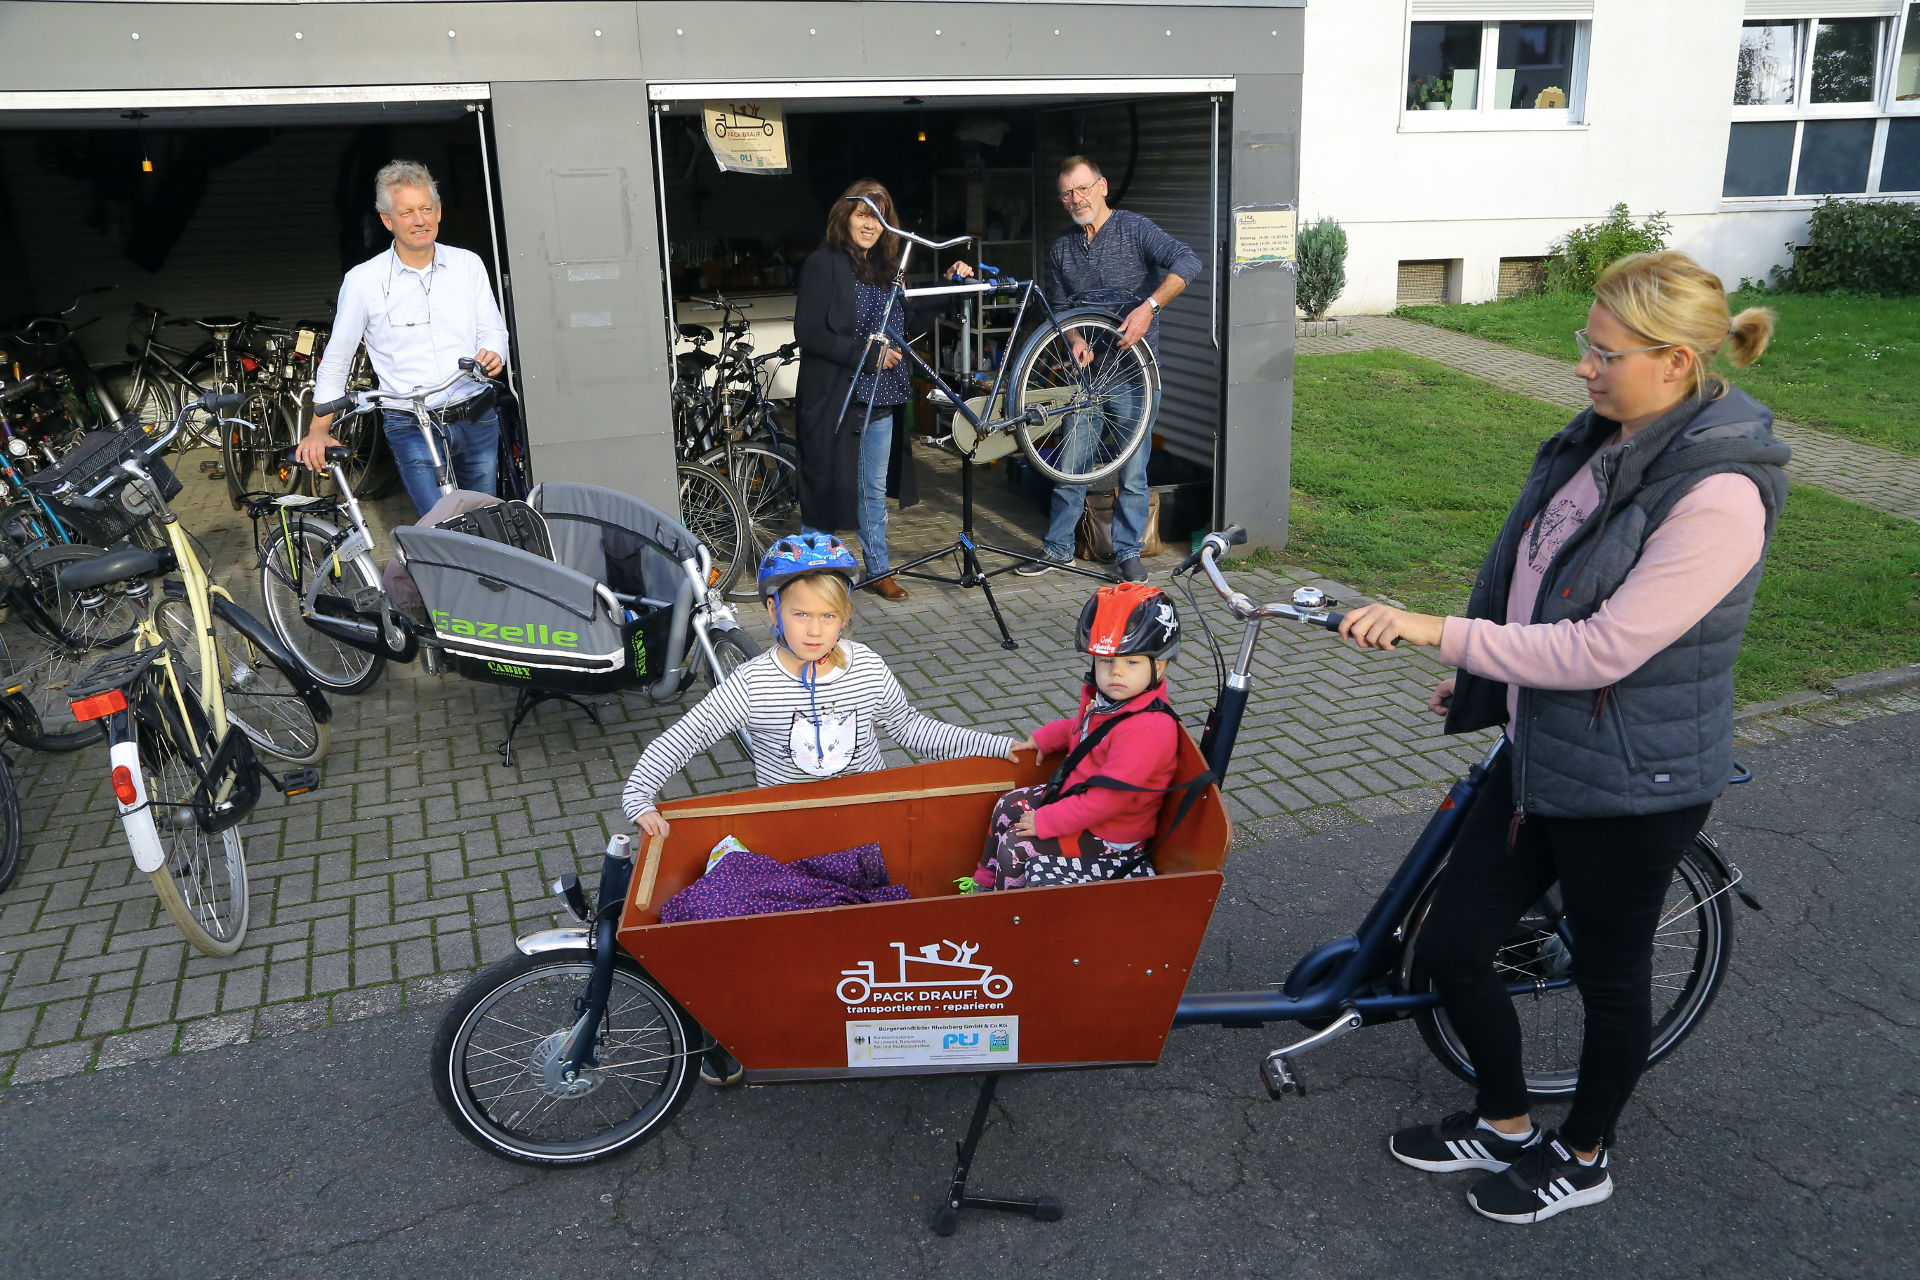 3 Erwachsene und 2 Kinder beim reparieren von Fahrrädern Quelle: Armin Fischer